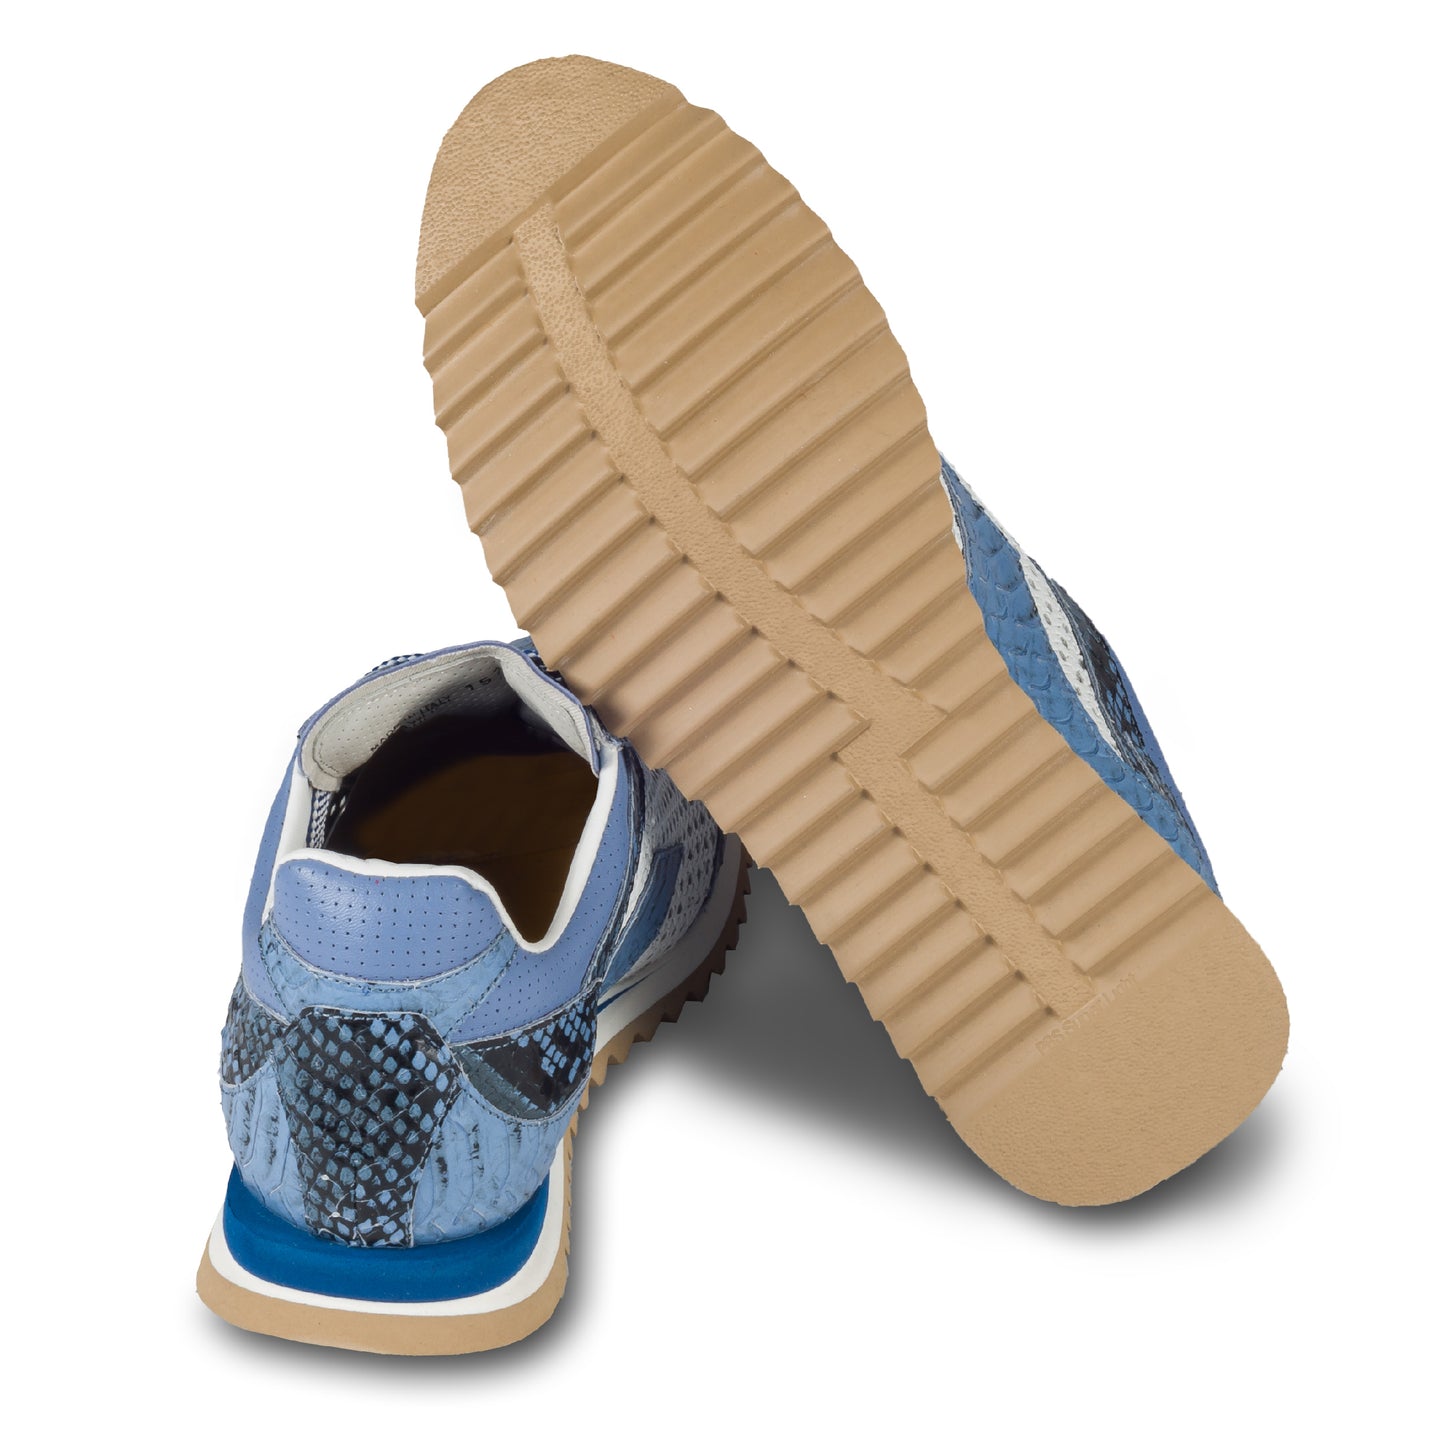 Lorenzi Herren Leder Sneaker in blau / weiß mit Schlangen-Prägung und perforiertem Kalbsleder. Handgefertigt in Italien. Ansicht der Ferse und Sohlenunterseite. 